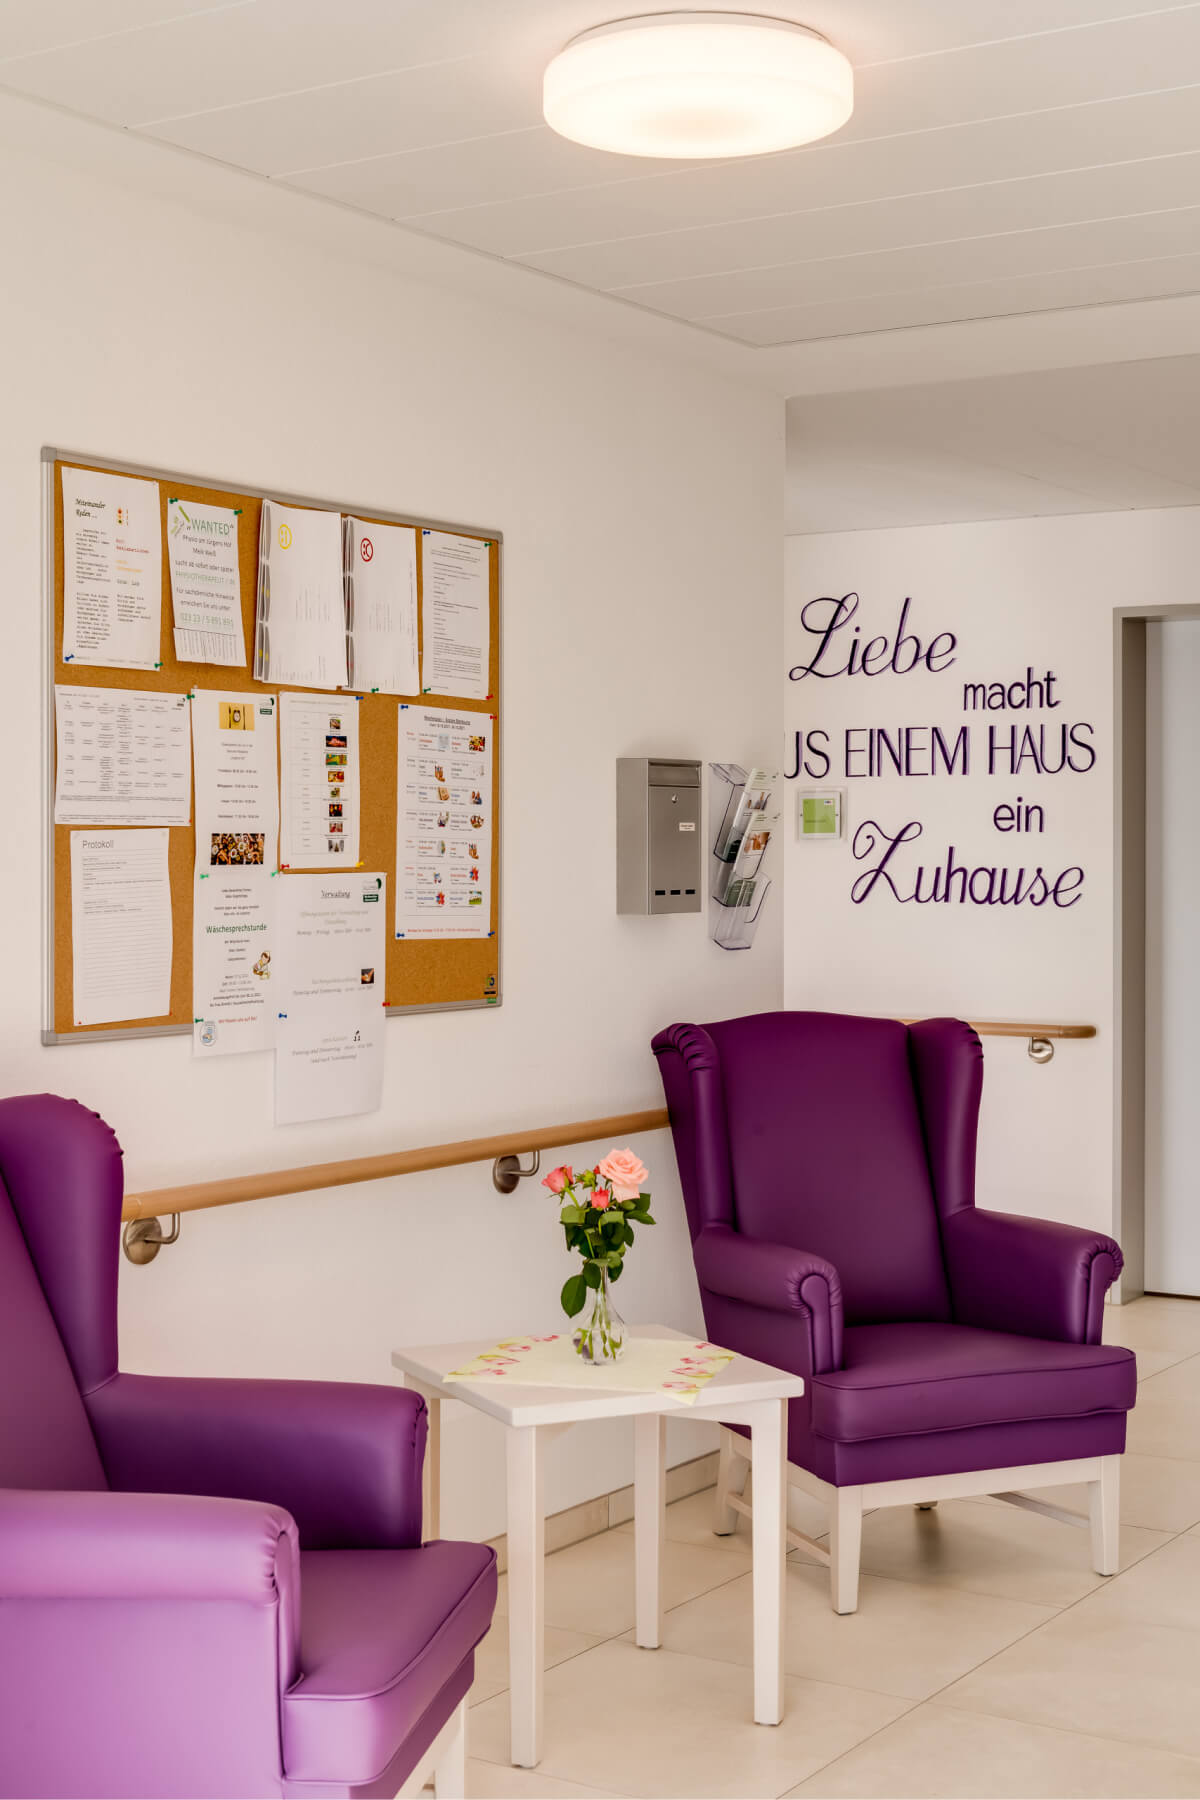 Gemütliche Sessel im Pflegeheim "Jürgens-Hof" in Herne